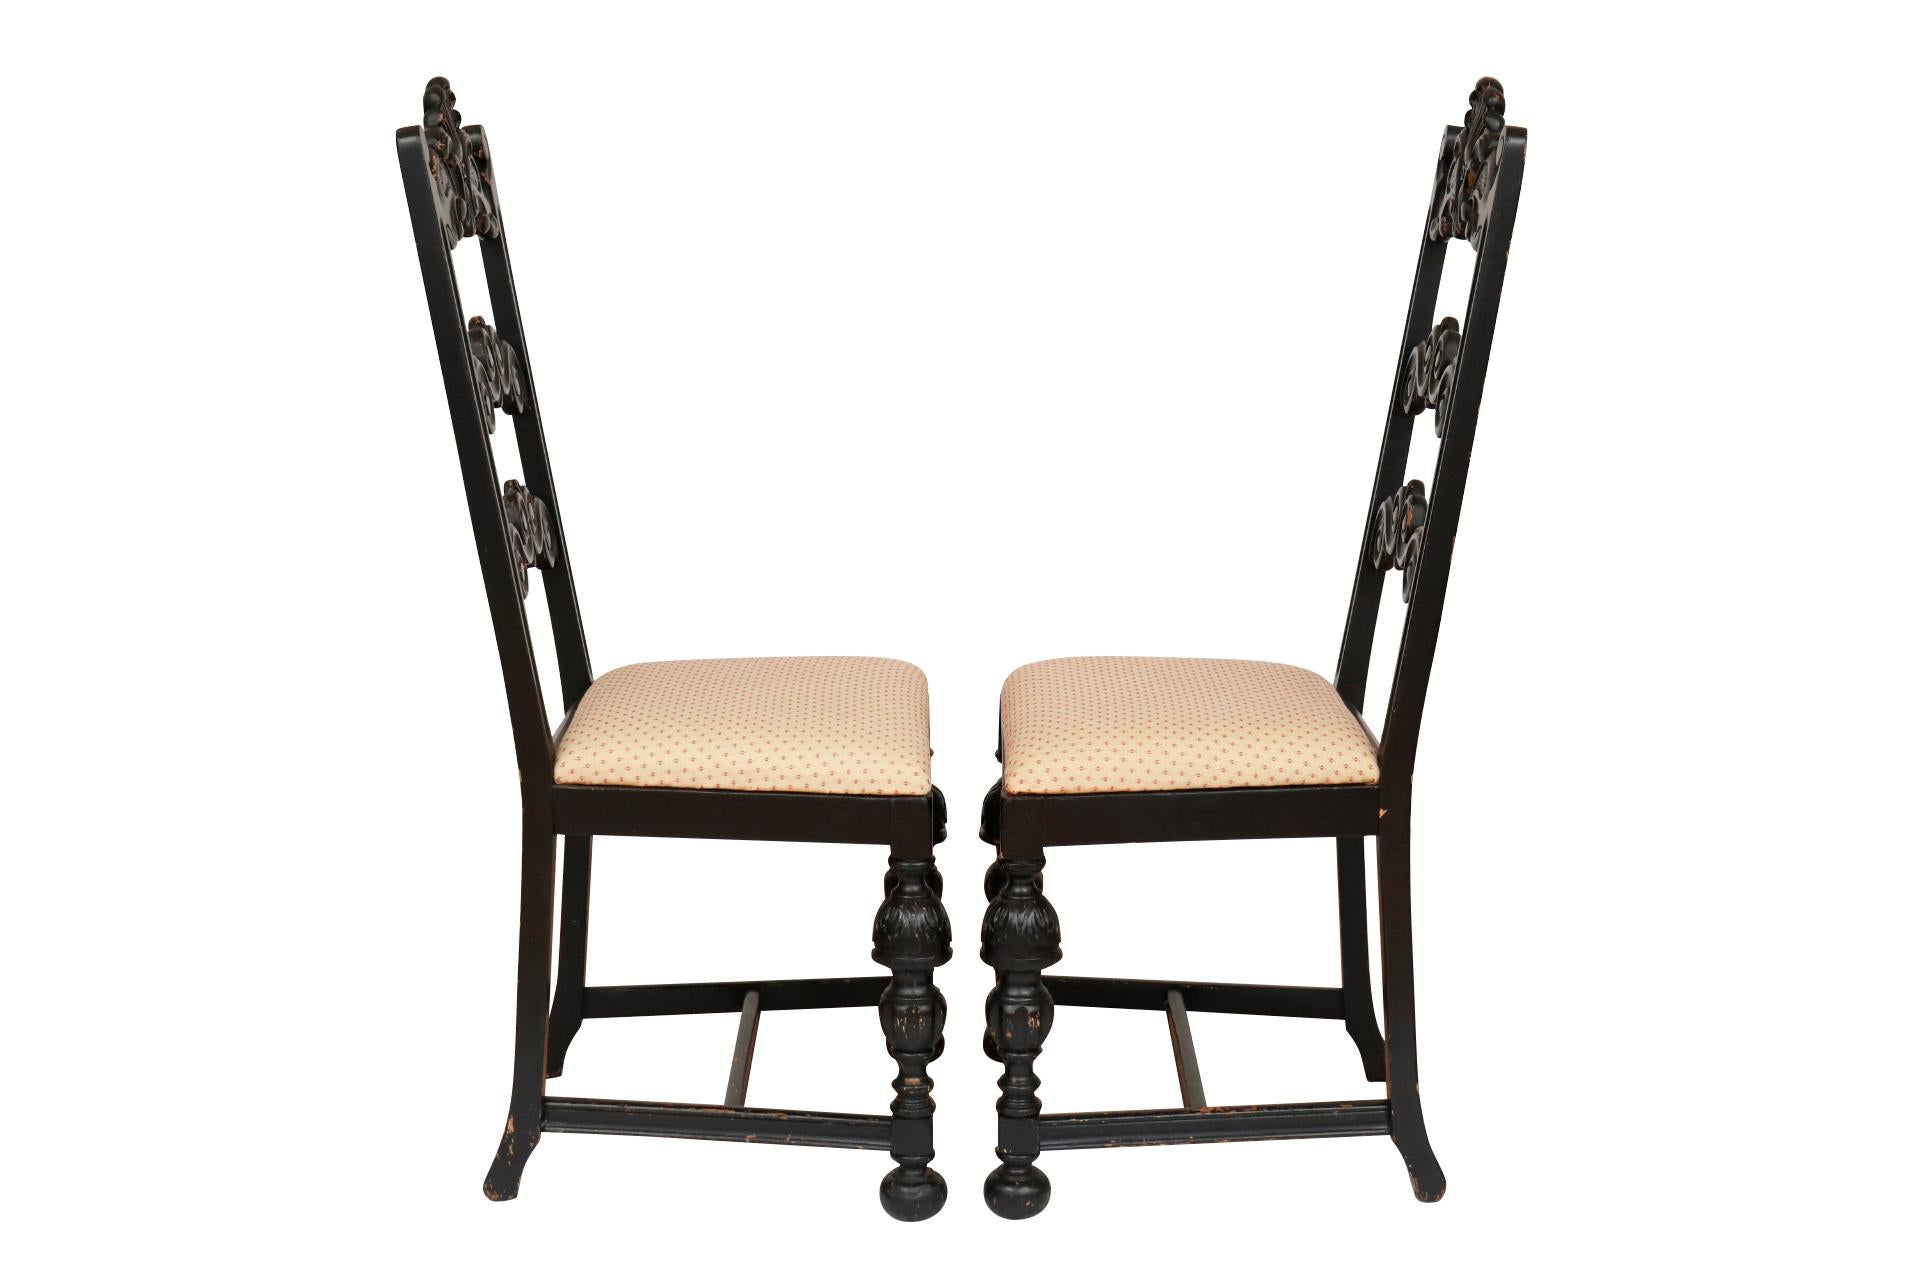 Ein Paar William & Mary Beistellstühle mit Leiterlehne. Die hohen Rückenlehnen der Stühle bestehen aus drei Querschienen, die kunstvoll mit Serpentinen und einem zentralen Federbusch geschnitzt sind. Die quadratischen Sitze sind mit einem gelben